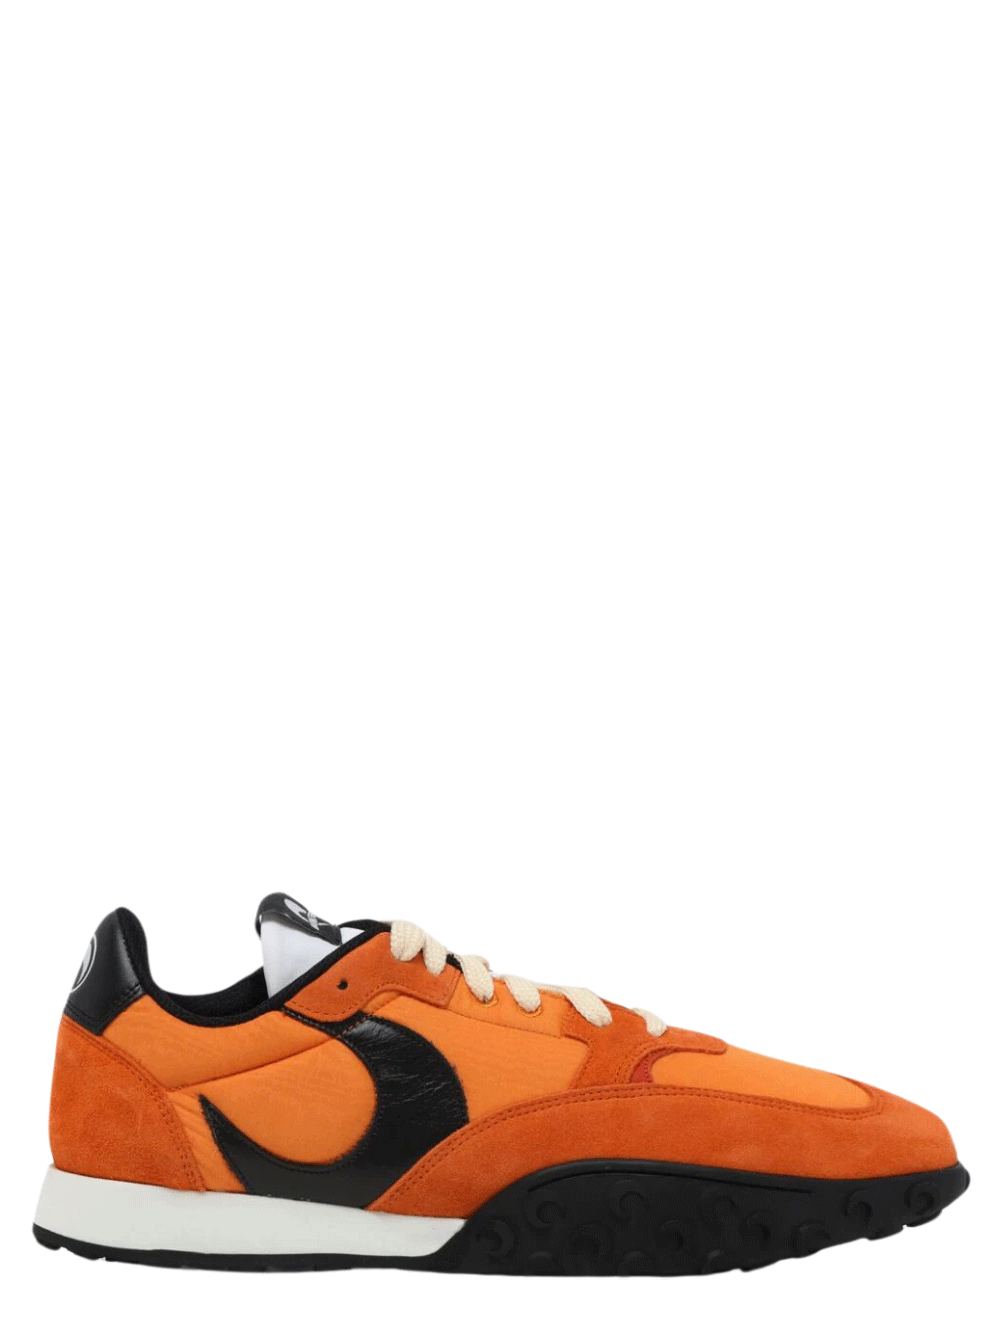 Marine-Serre-Metal-Free-Leather-Low-Top-Sneakers-Orange-1